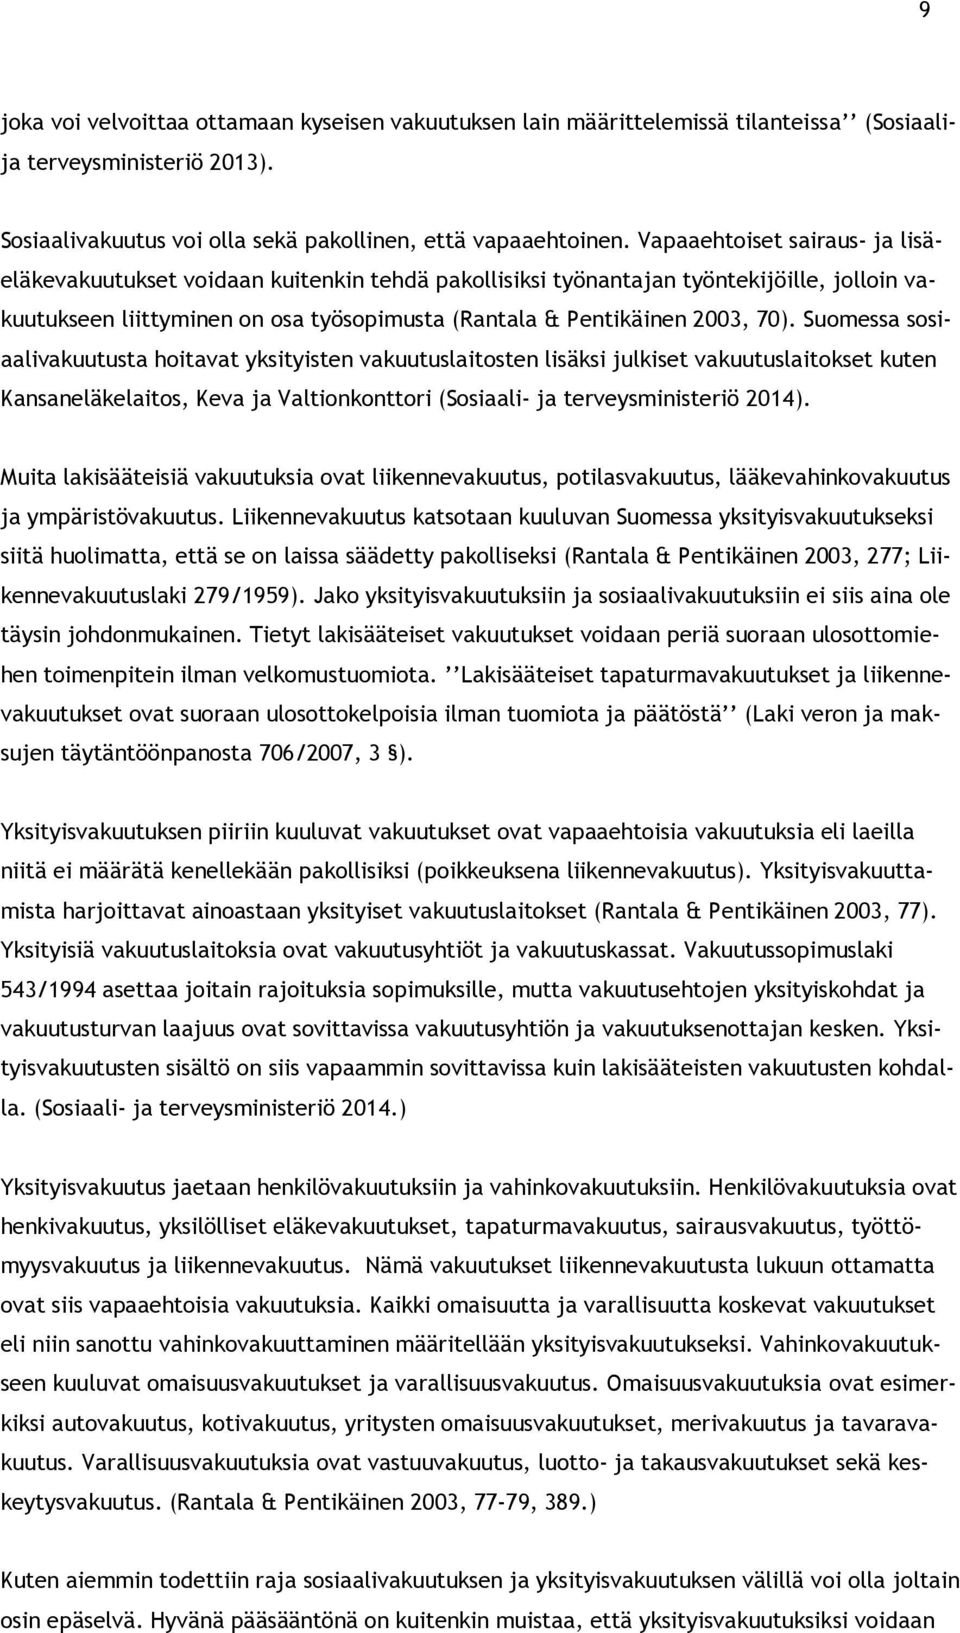 Suomessa sosiaalivakuutusta hoitavat yksityisten vakuutuslaitosten lisäksi julkiset vakuutuslaitokset kuten Kansaneläkelaitos, Keva ja Valtionkonttori (Sosiaali- ja terveysministeriö 2014).